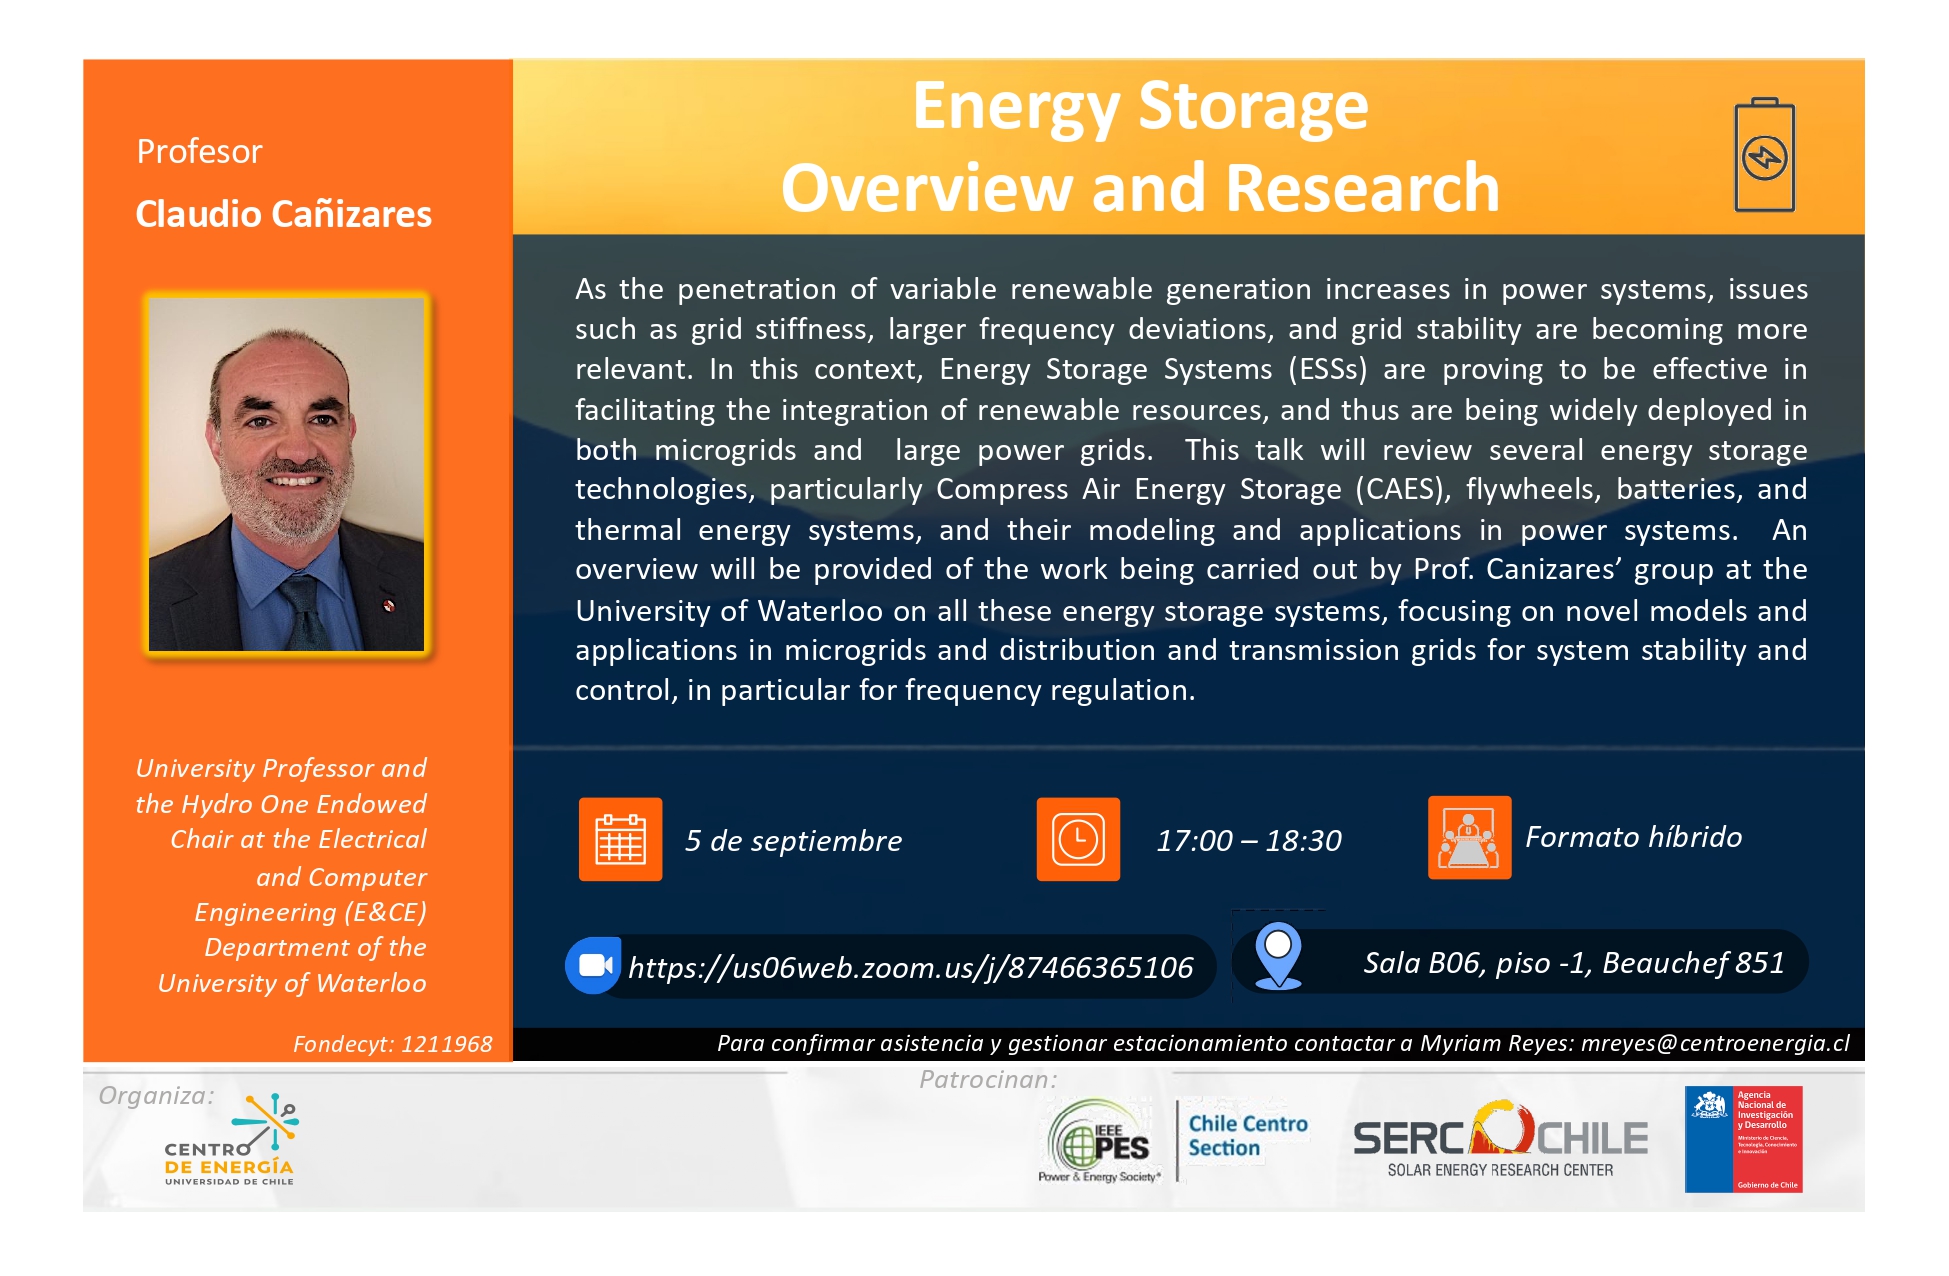 (Español) El Pasado 5 De Septiembre El Prof. Claudio Cañizares Y La Charla: Energy Storage Overview An Research.